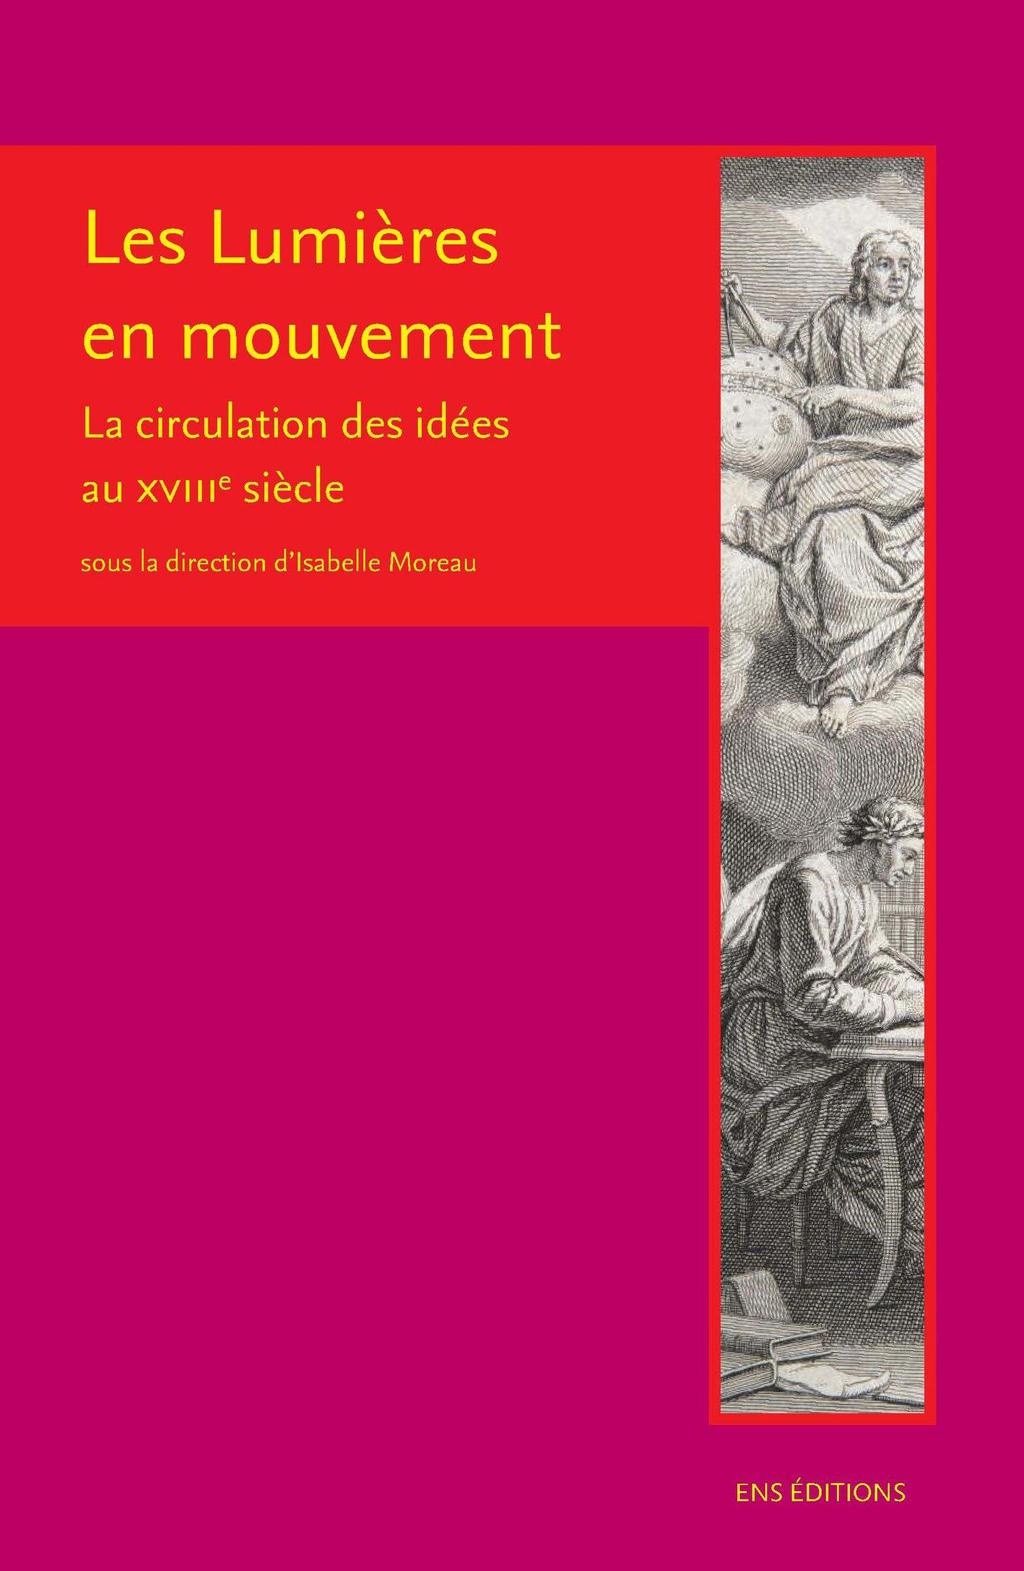 Poèmes pour ma muse - Jean-Luc Seguin - Publibook - Grand format